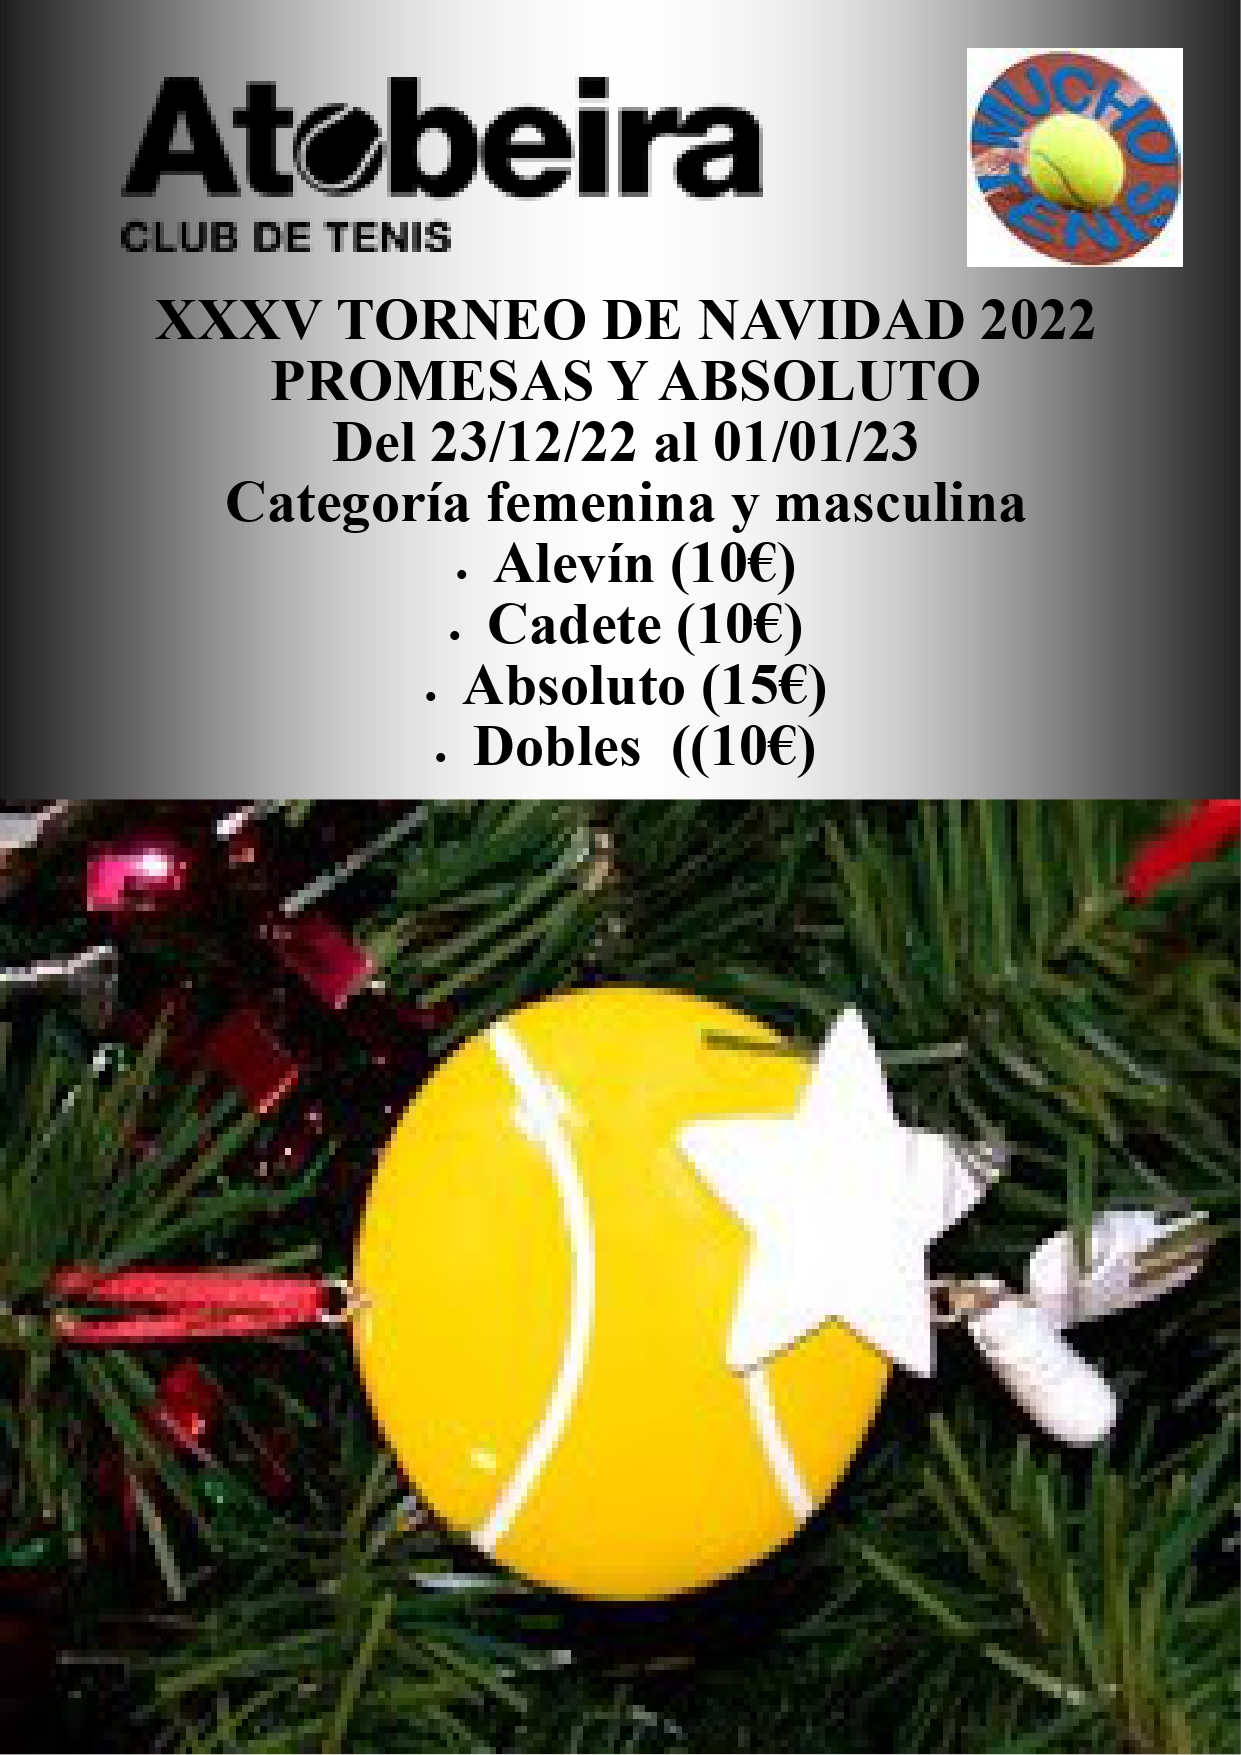 Cartel del XXXV Torneo de Navidad Promesas / Absoluto A Tobeira 2022